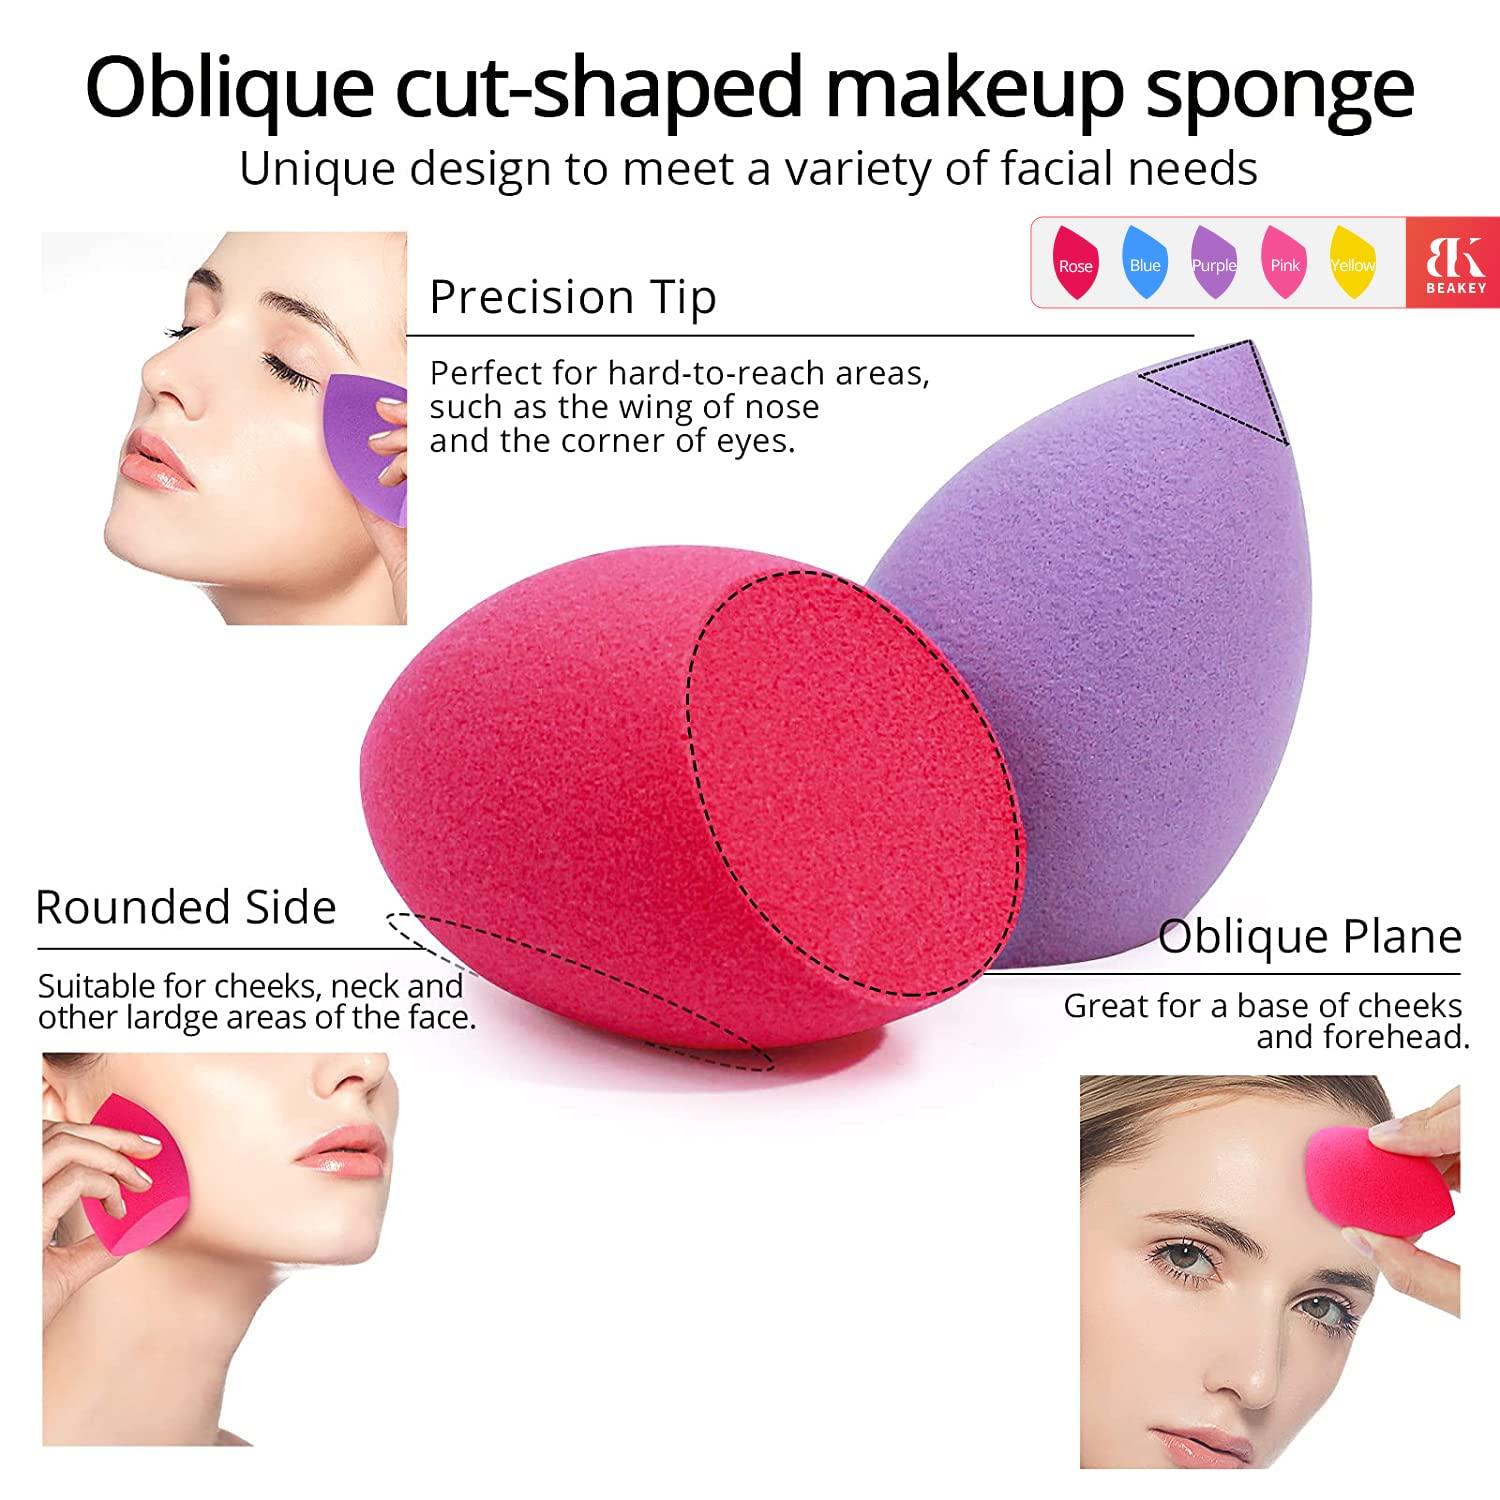 BEAKEY 5 Pcs Oblique Cut Makeup Sponge Set Foundation Blending